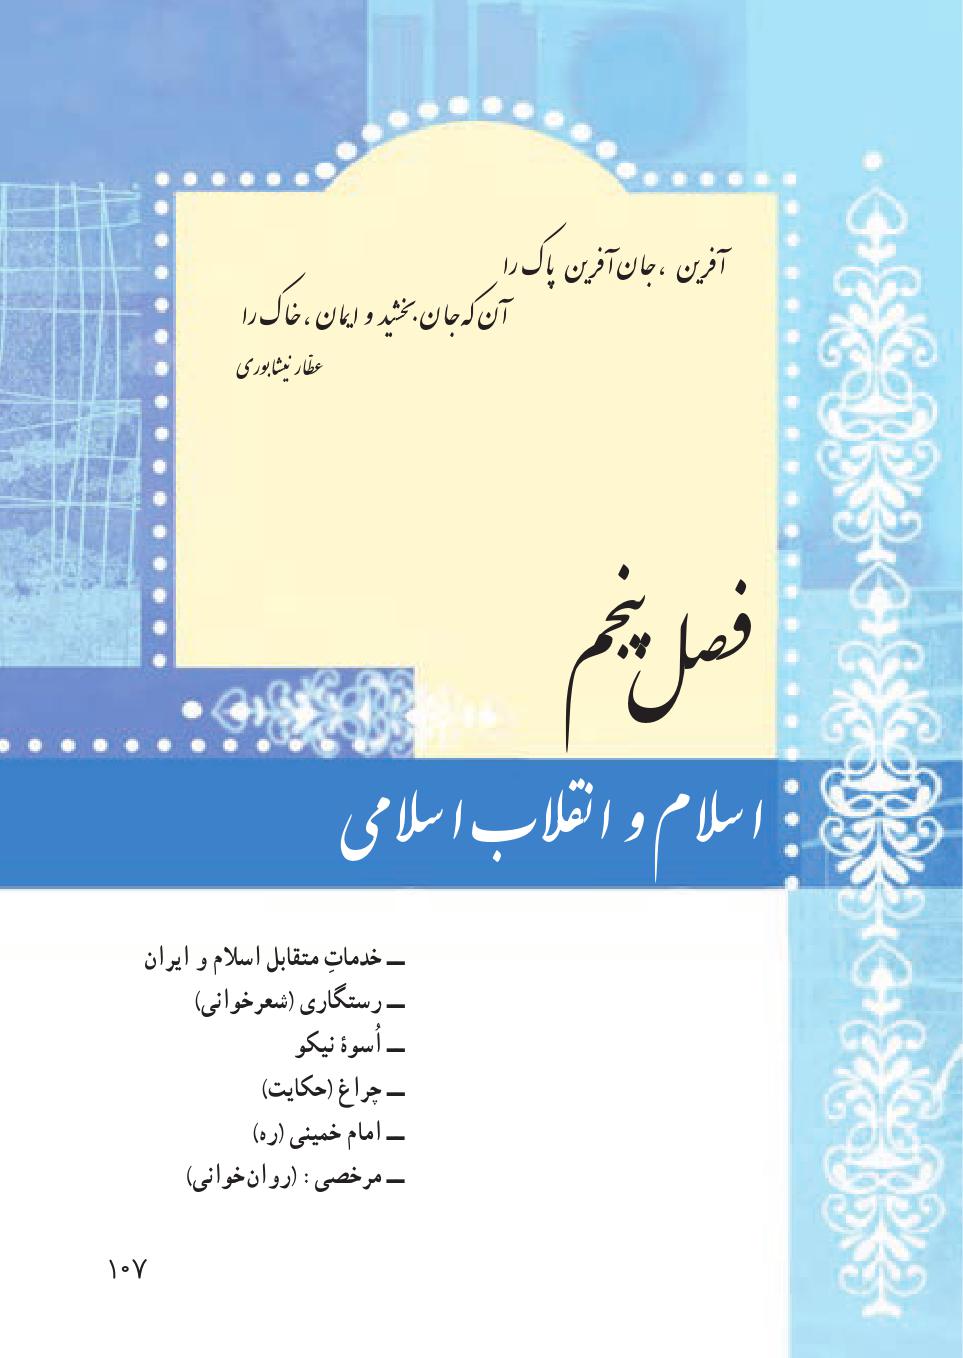 دانلود جزوه آموزشی درس (12) فارسی هفتم / خدمات متقابل اسلام و ایران 2021